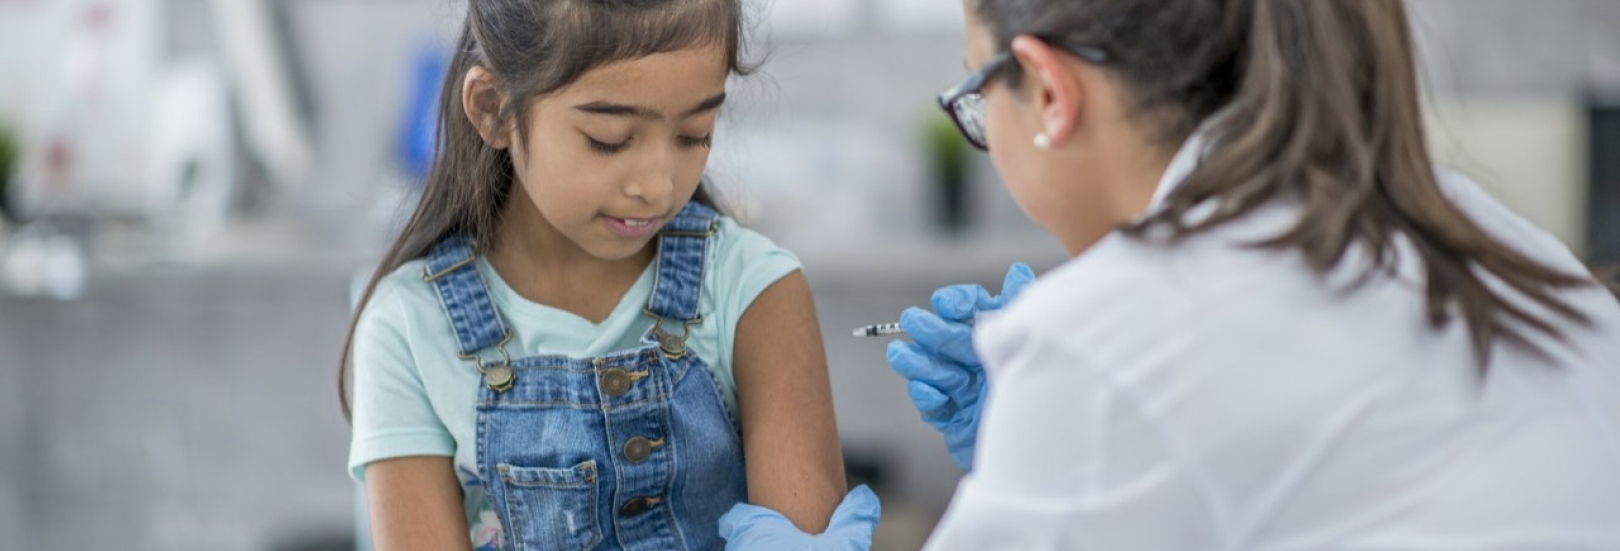 Impfungen im Schulkindalter